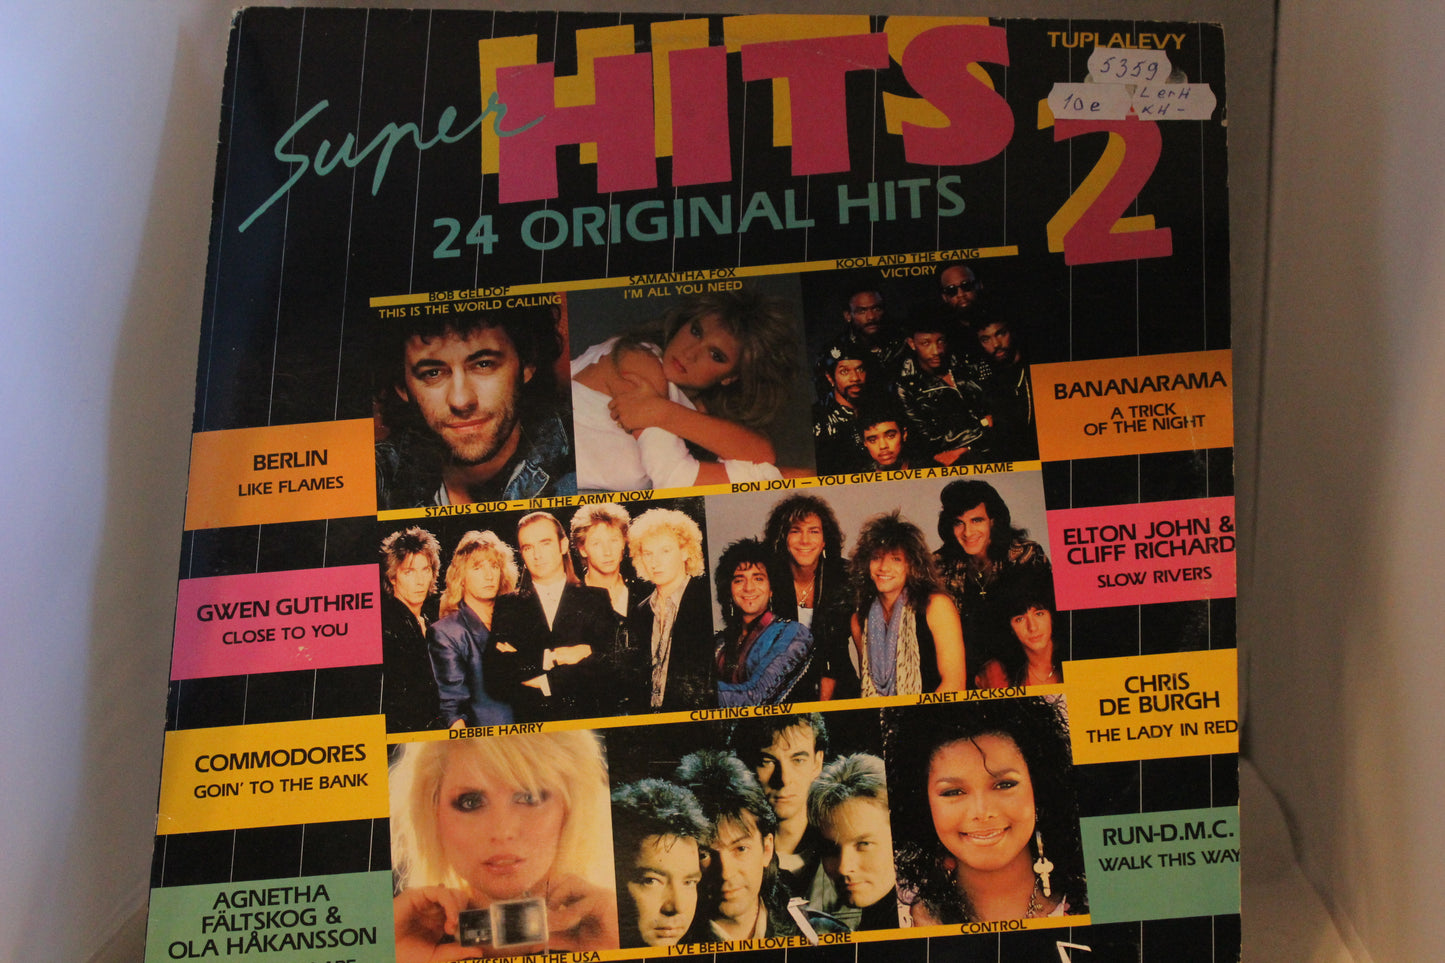 Super Hits 2 24 original hits Tupla lp-levy